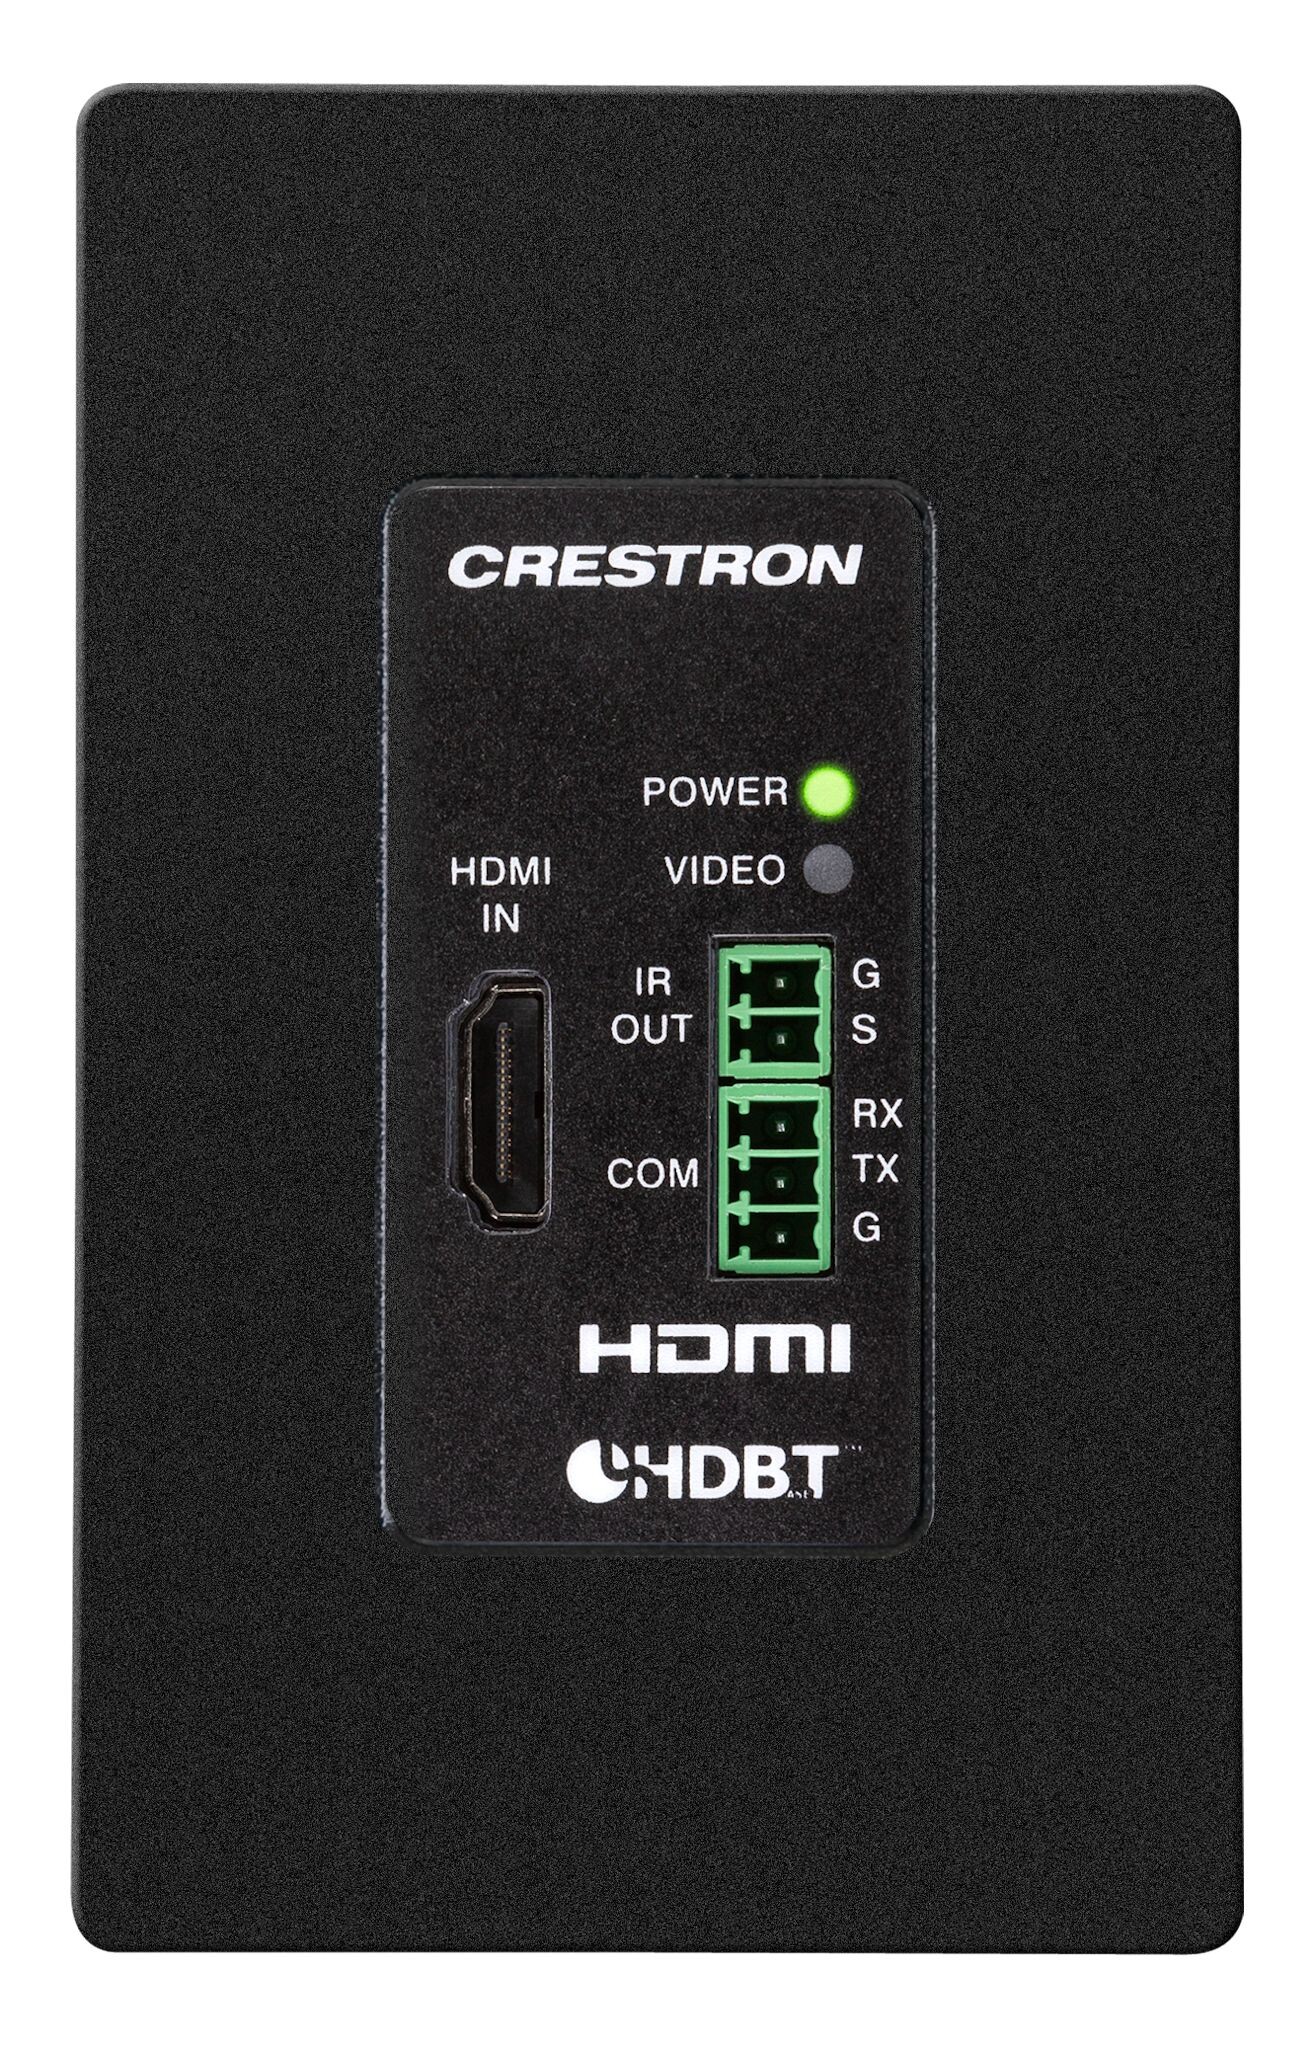 Crestron-DM-TX-4KZ-100-C-1G-B-T-4K60-4-4-4-HDR-Wandplattensender